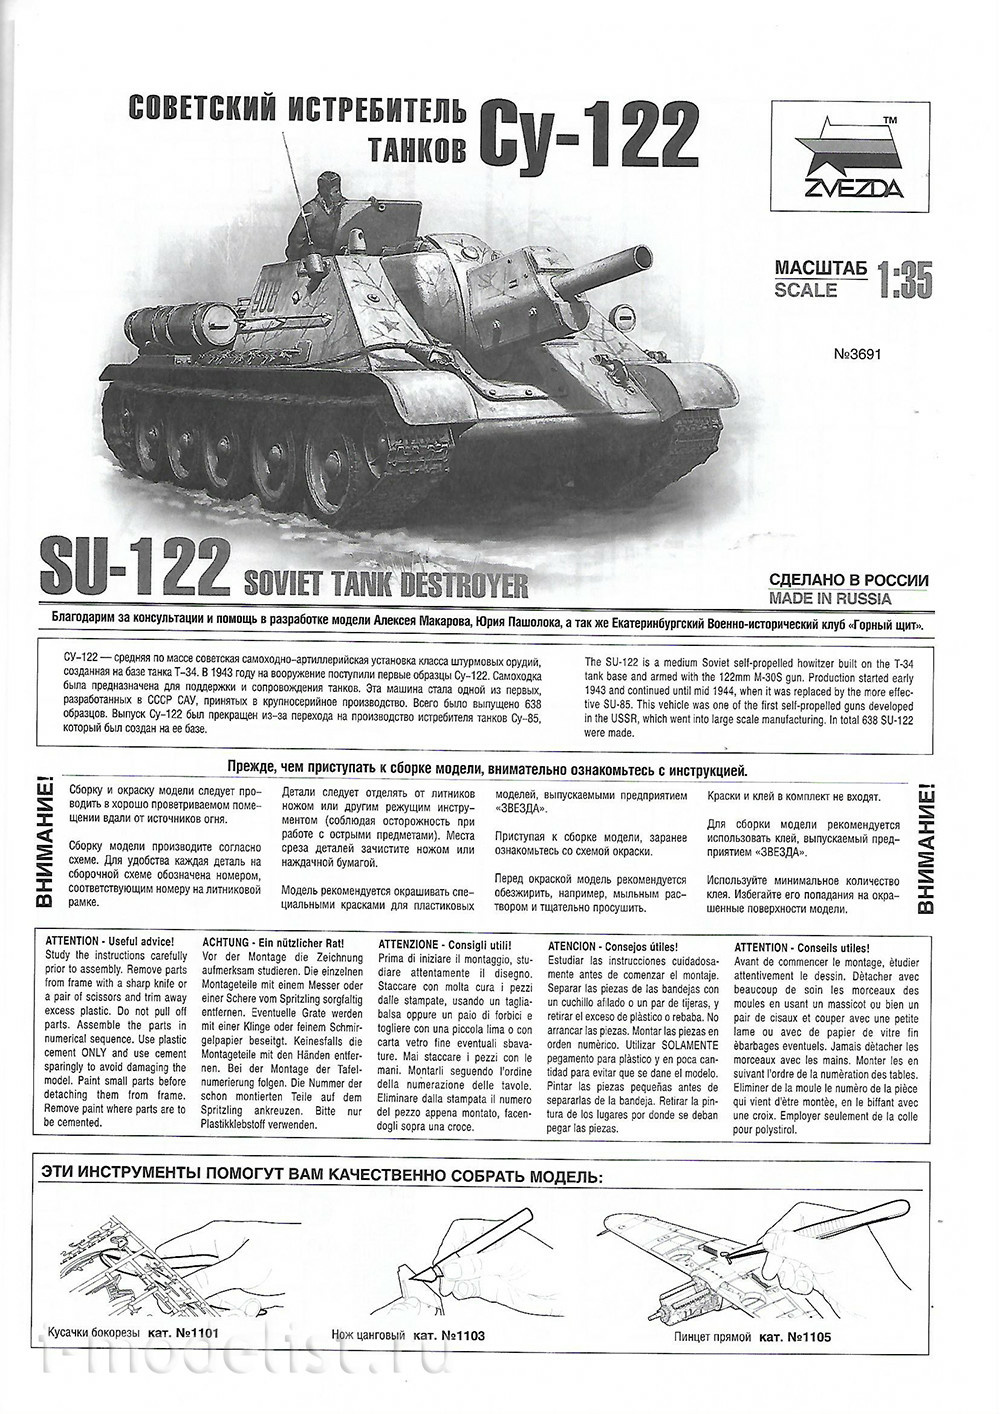 3691 Звезда 1/35 Советская самоходная артиллерийская установка СУ-122